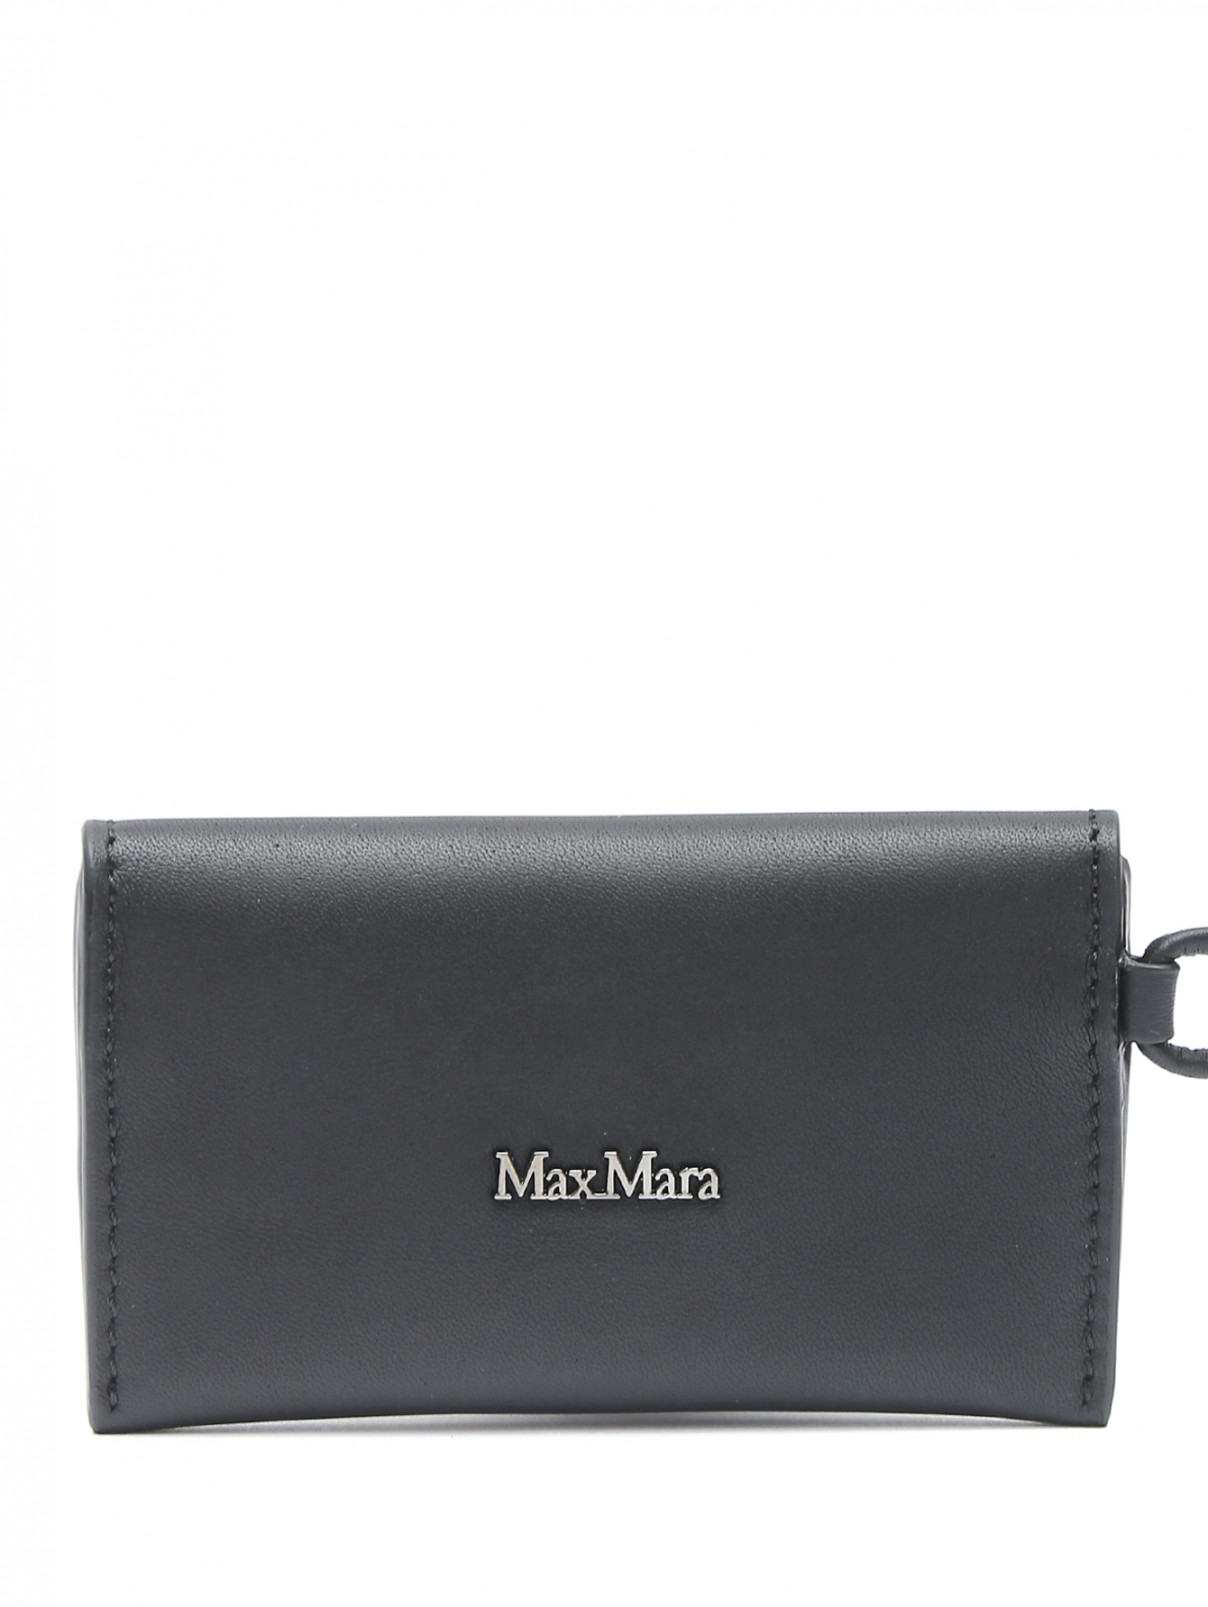 Мини-сумка из кожи Max Mara  –  Общий вид  – Цвет:  Черный